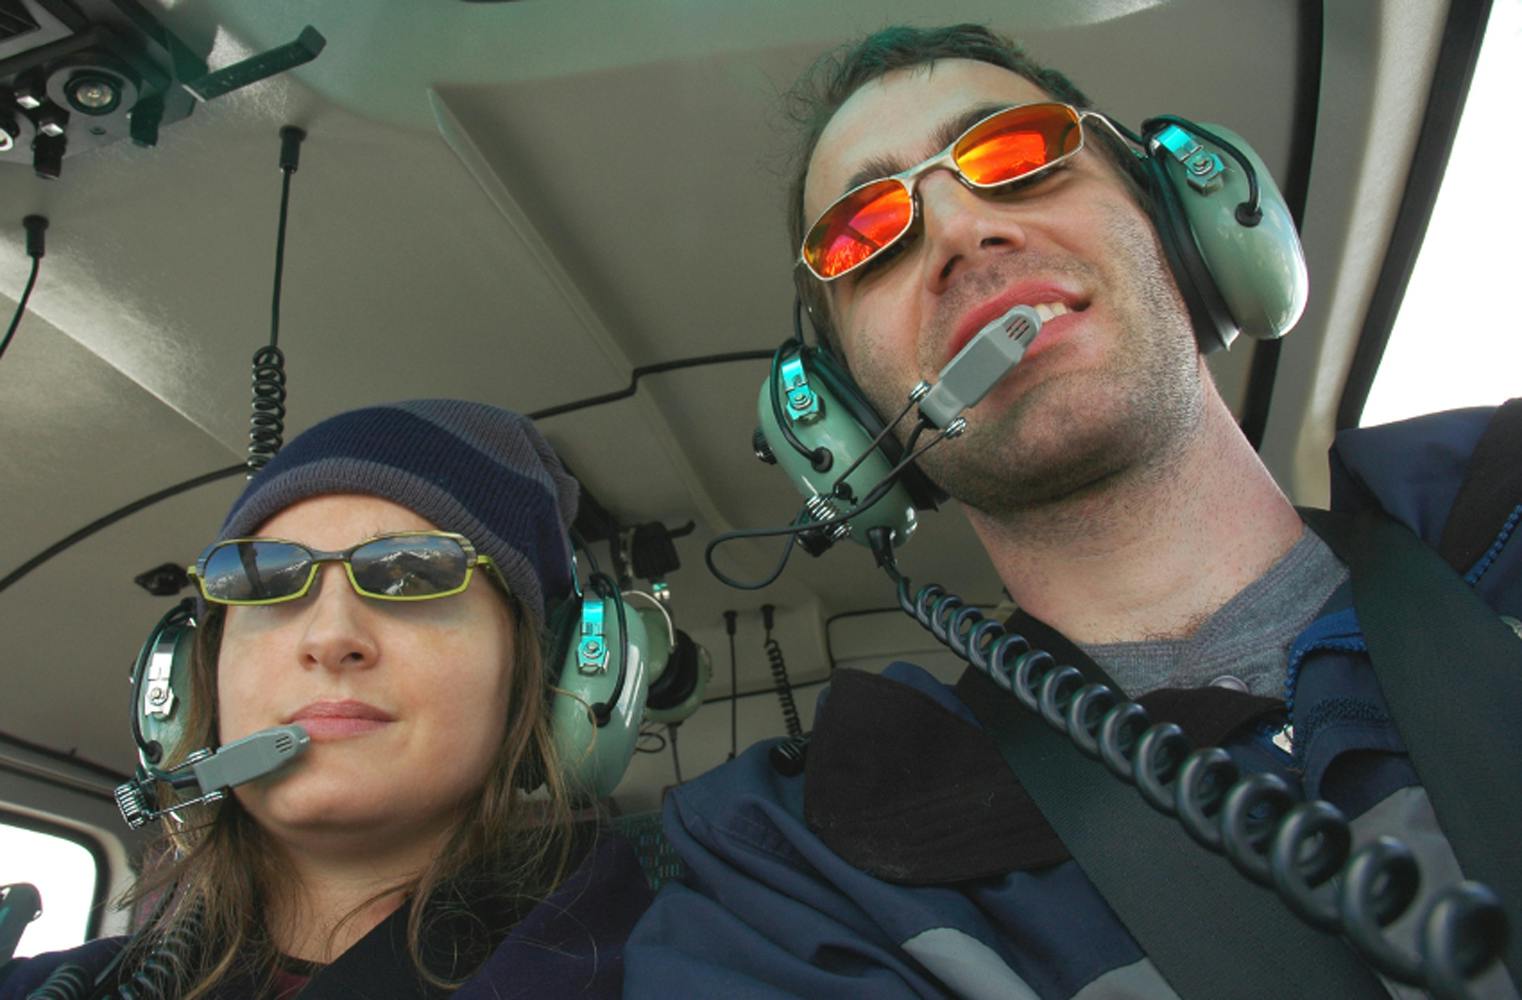 Romantischer Rundflug | Hubschrauber exklusiv für 2 | 30 Min